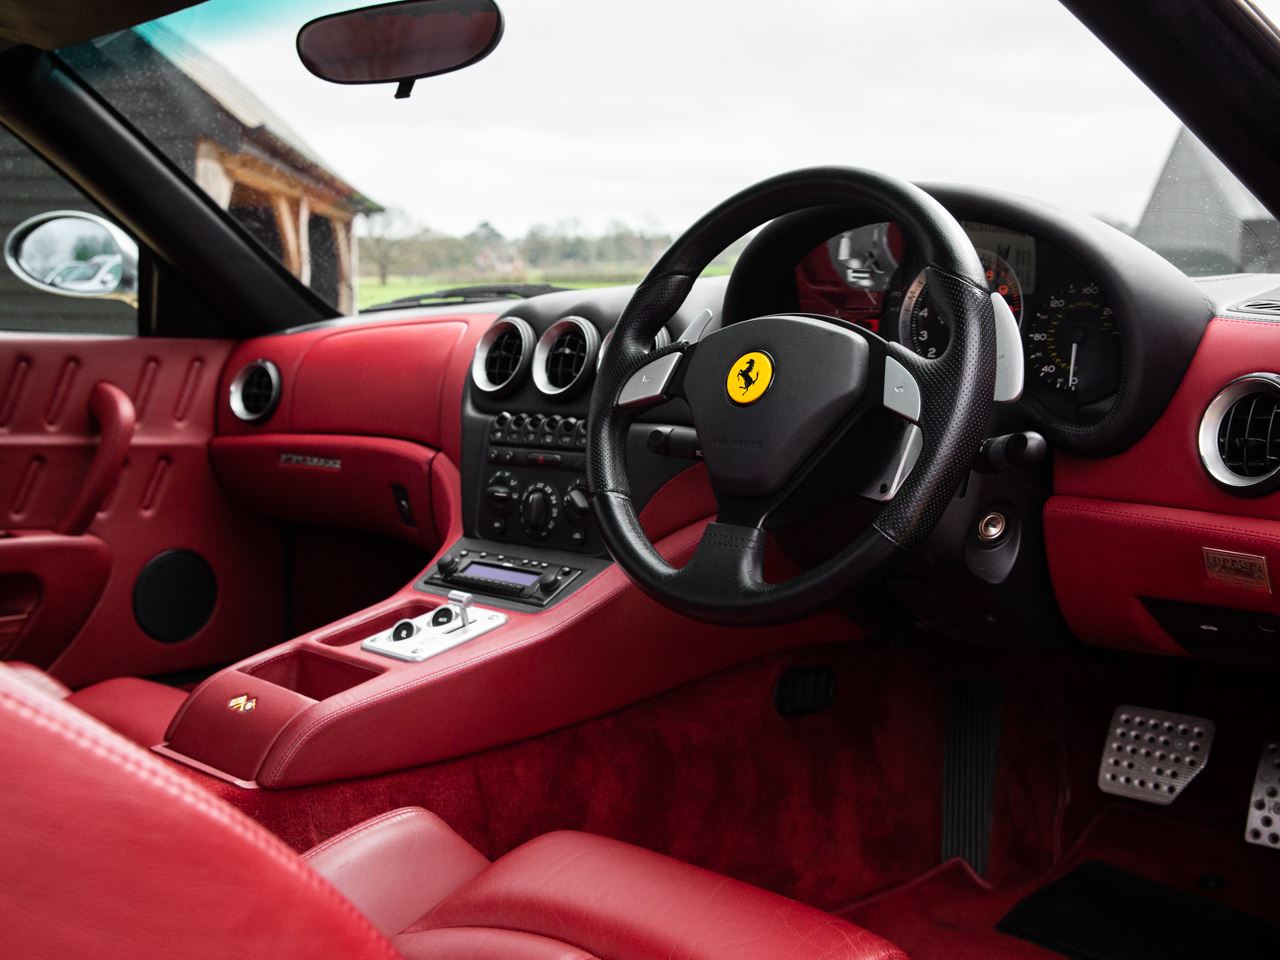 Ferrari 575m 4ktrnnw e0c7hbd11scbb